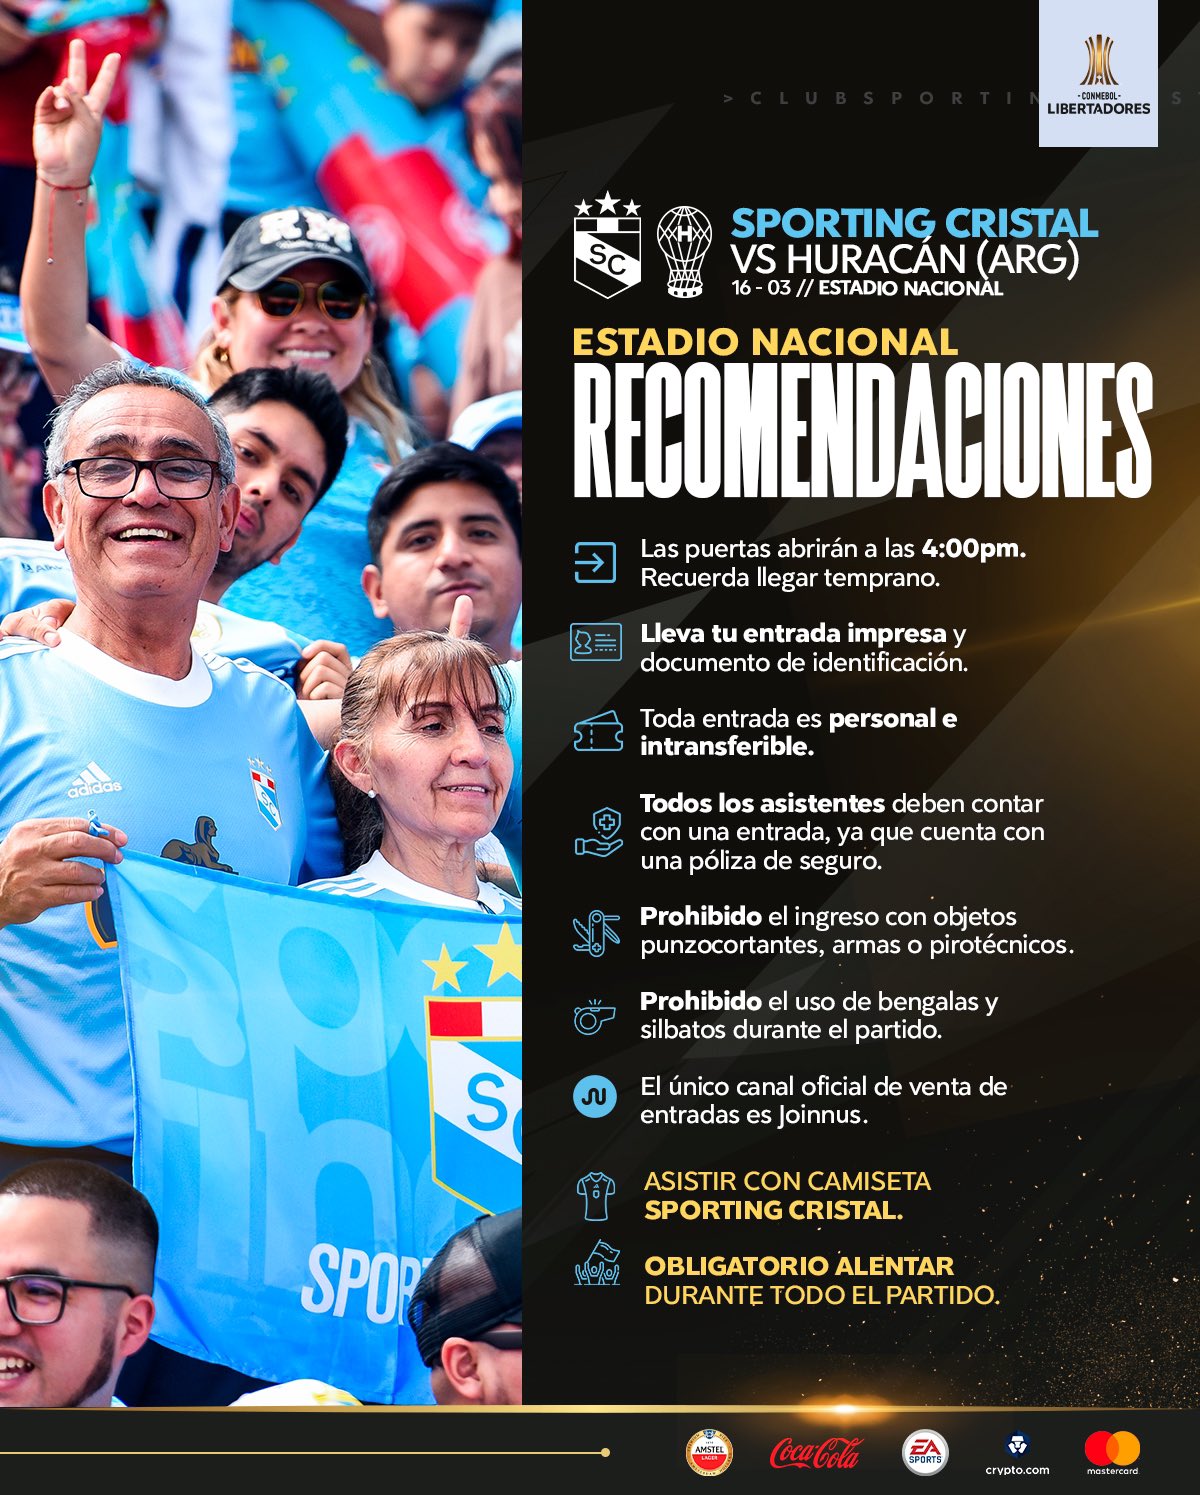 Recomendaciones para el hincha que irá al Estadio Nacional para el Sporting Cristal vs Huracán.